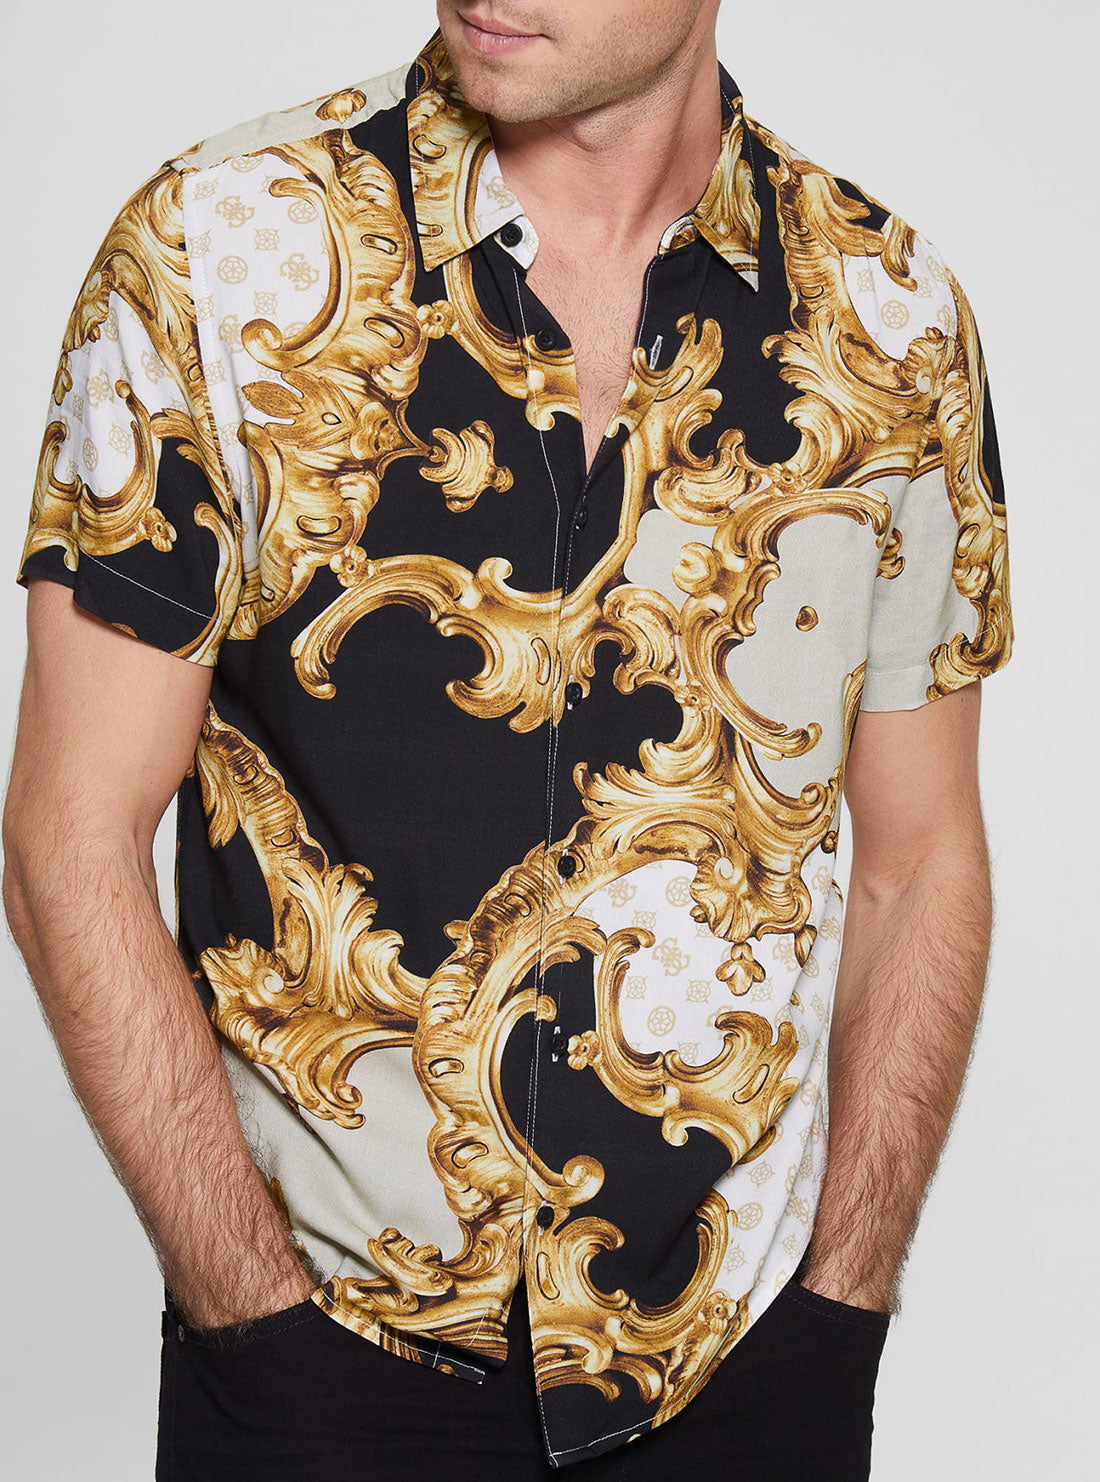 GUESS Men's Eco Gold Peony Print Rayon Shirt M3RH62WD4Z2 Detail View